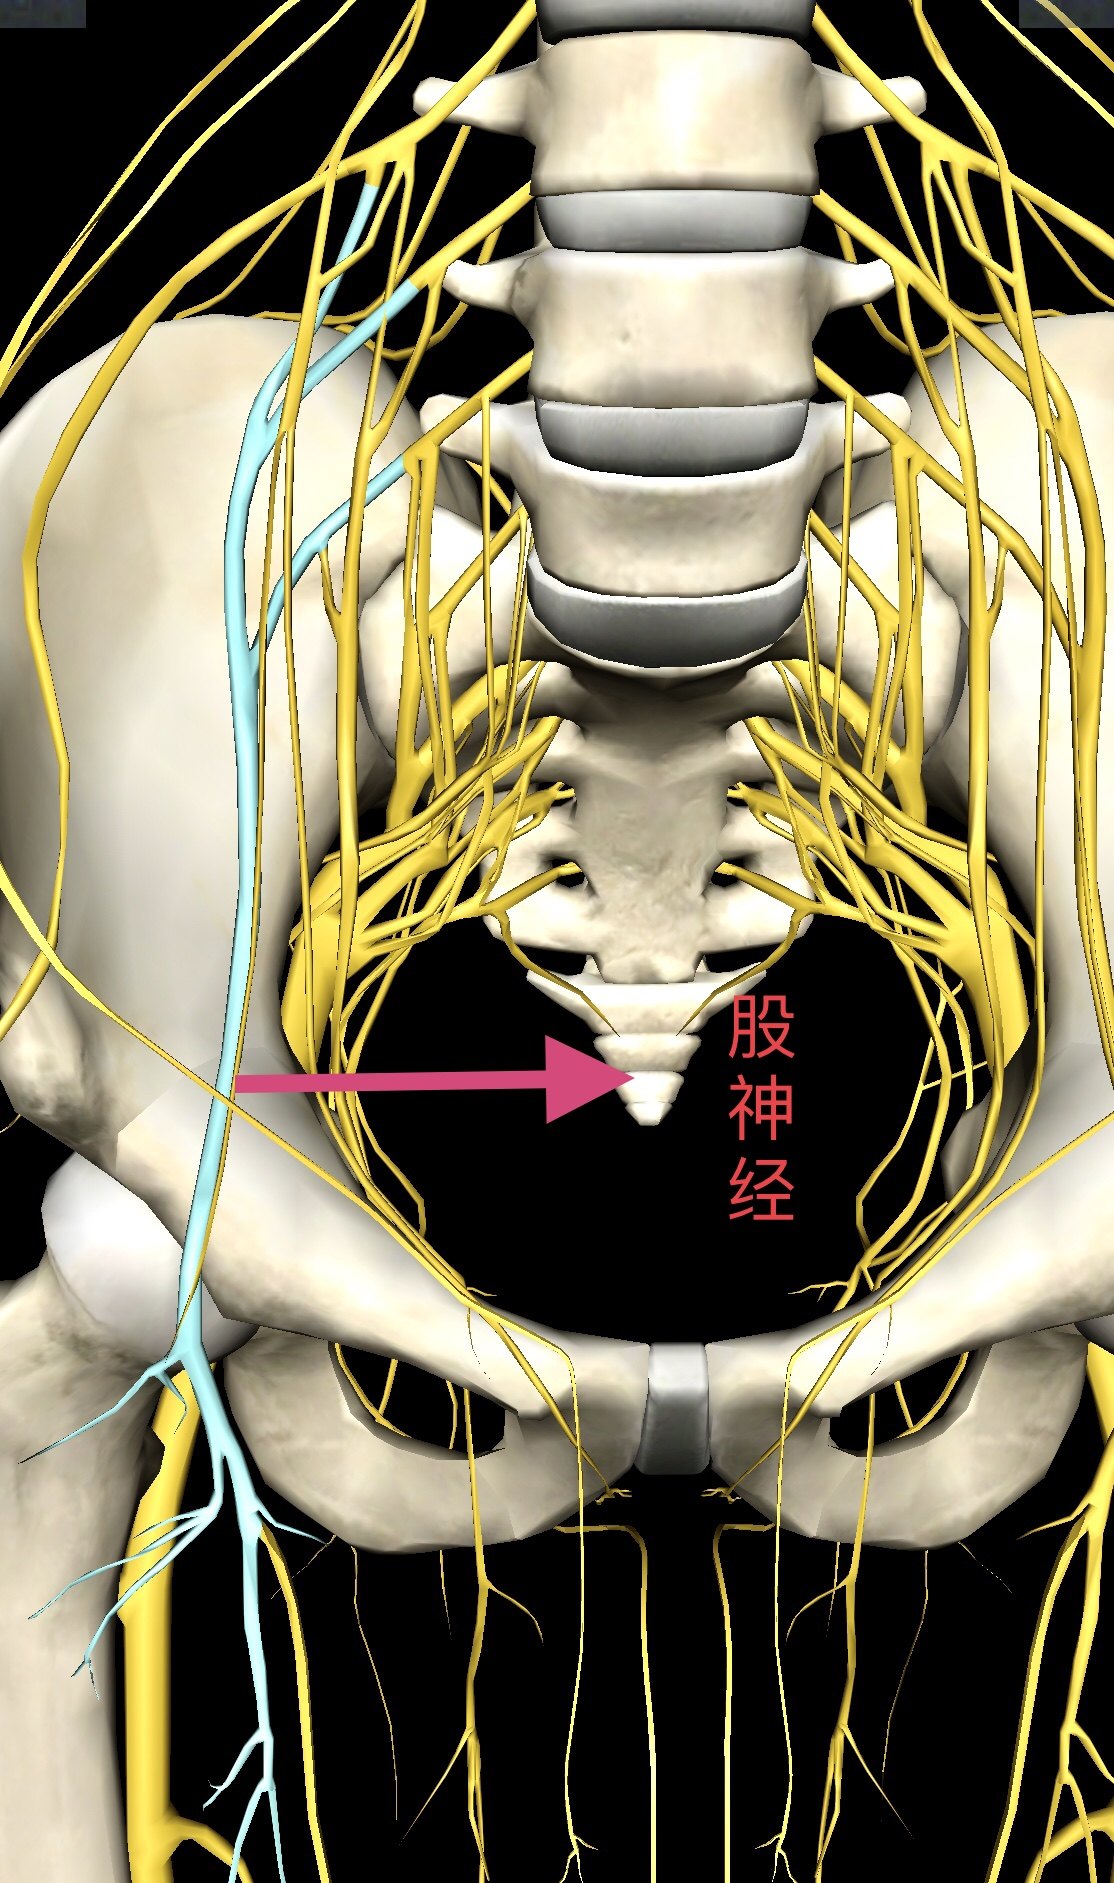 生殖股神经支配范围图片